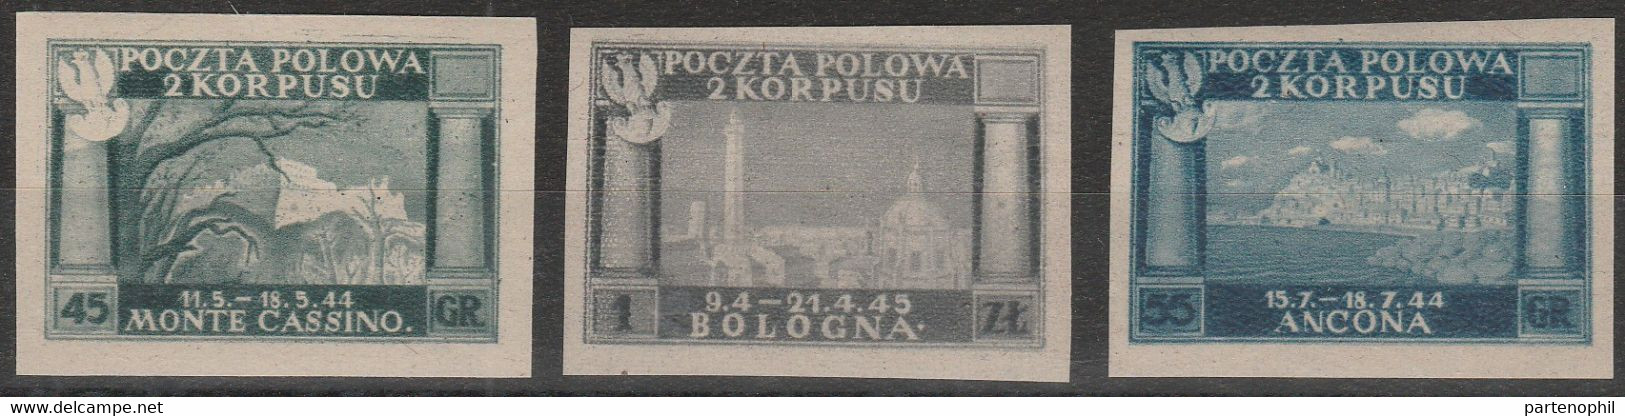 257 - Corpo Polacco  1946 - Vittorie Polacche 1A/3A. Cat. € 650,00. SPL - 1946-47 Corpo Polacco Period